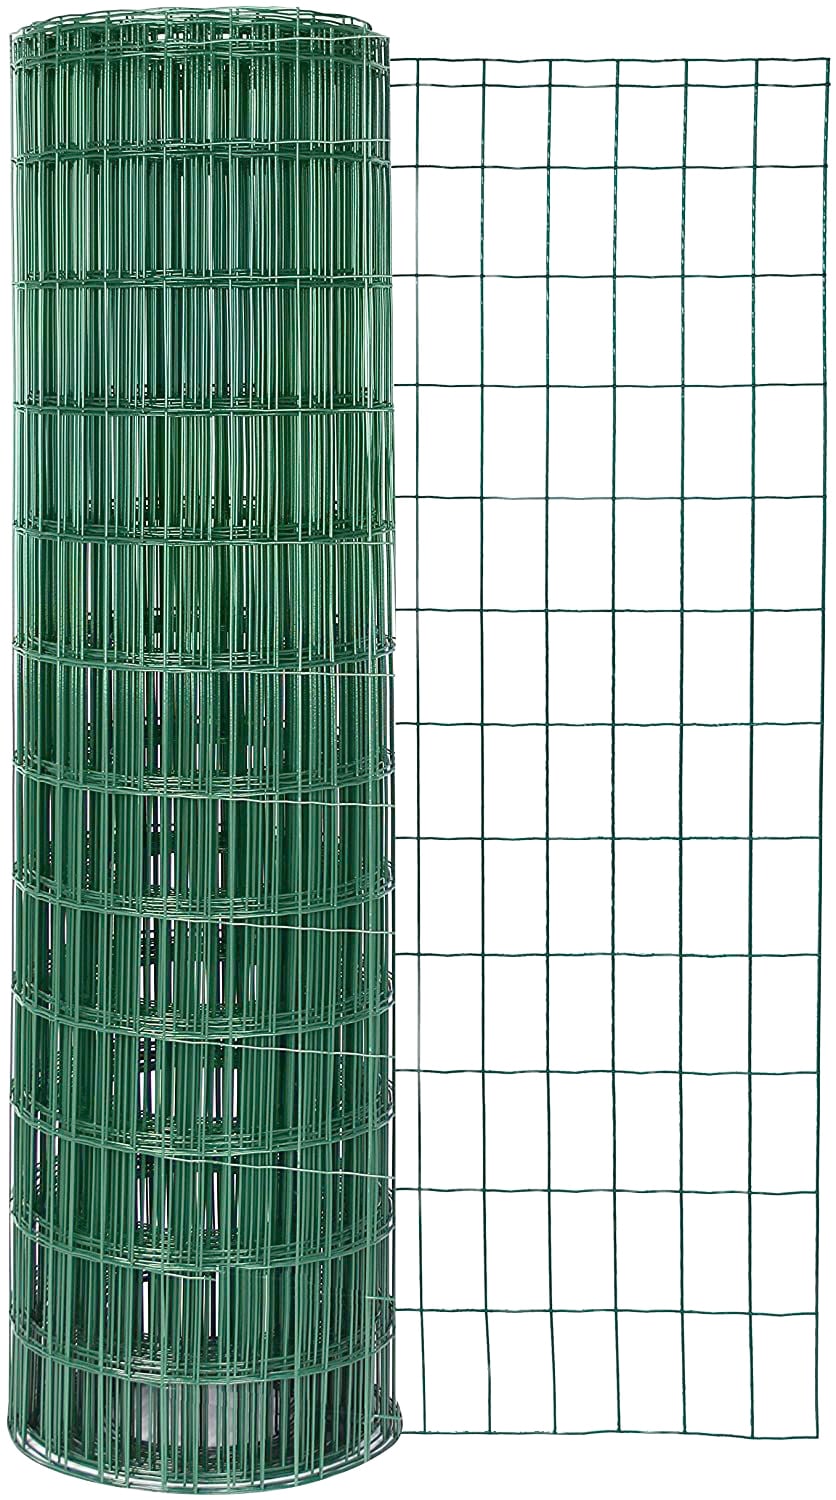 GAH-Alberts 604868 Schweißgitter Fix-Clip Pro®, grün RAL 6073, 1500 mm Höhe, 25 m Rolle, Drahtstärke: 2,2 / 2,2 mm, Maschenweite: 50 x 100 mm